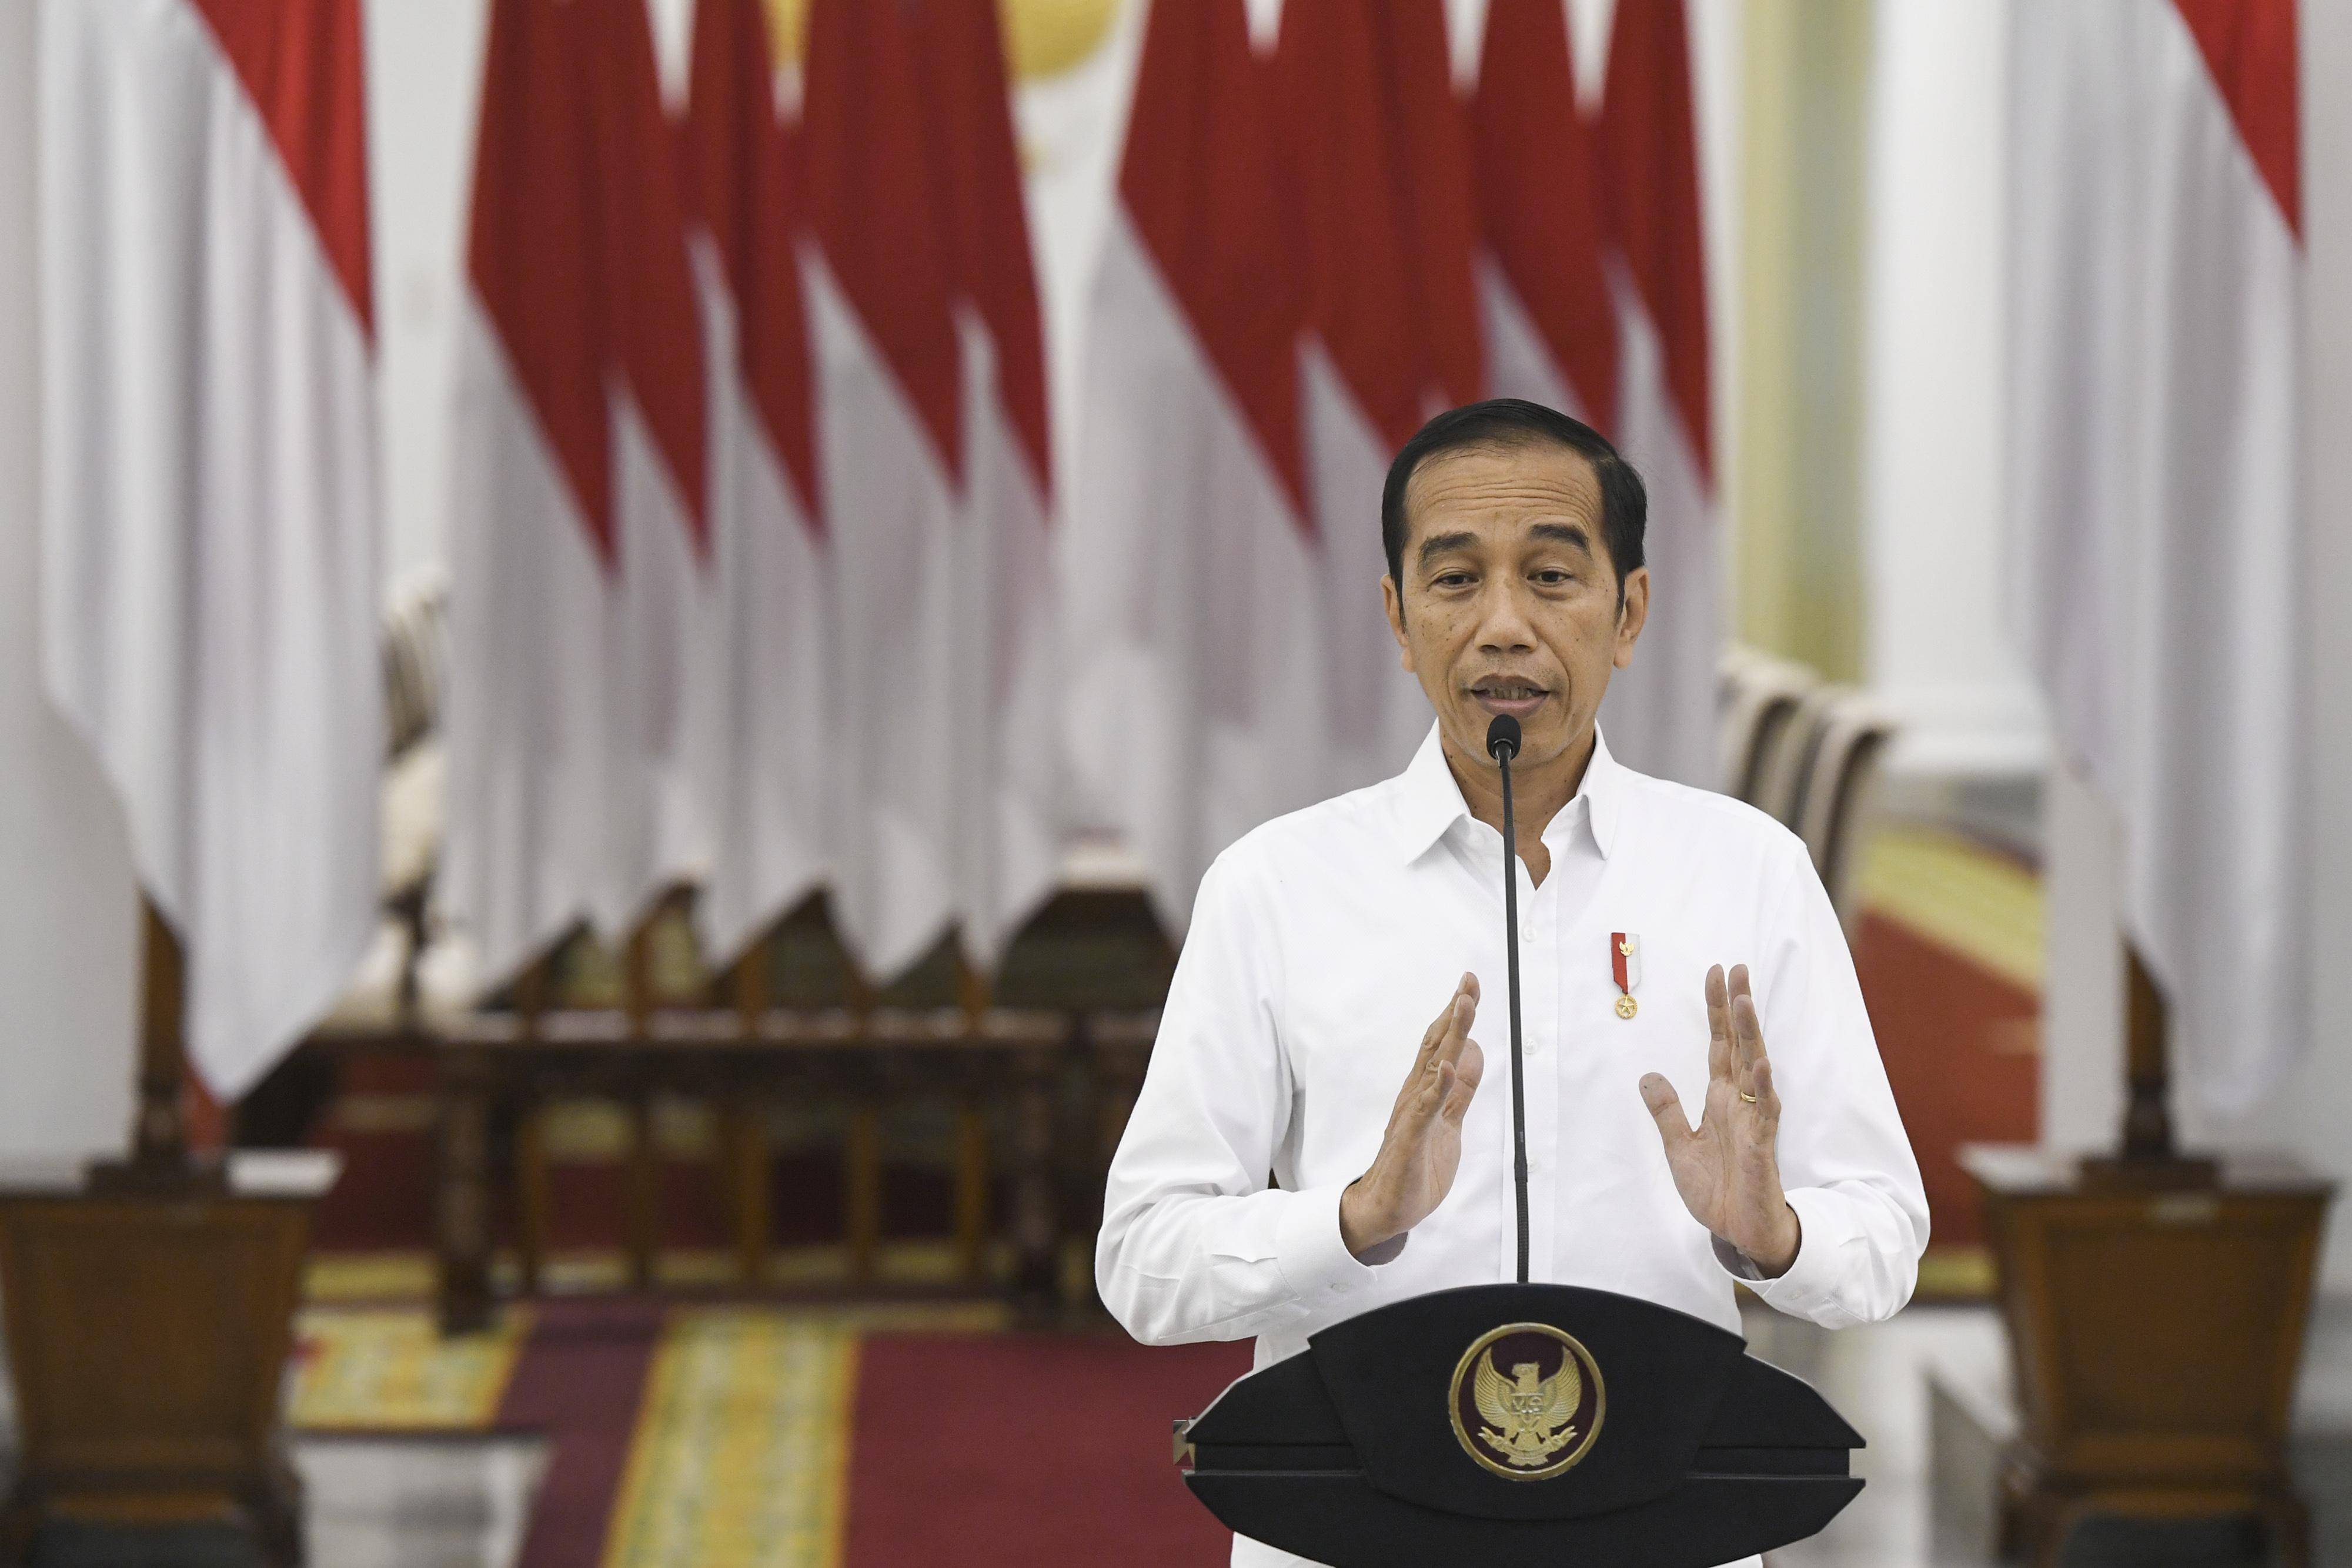 Berita Hari Ini: Jokowi Siapkan Karantina Wilayah; Kebijakan OJK Bagi Nonbank